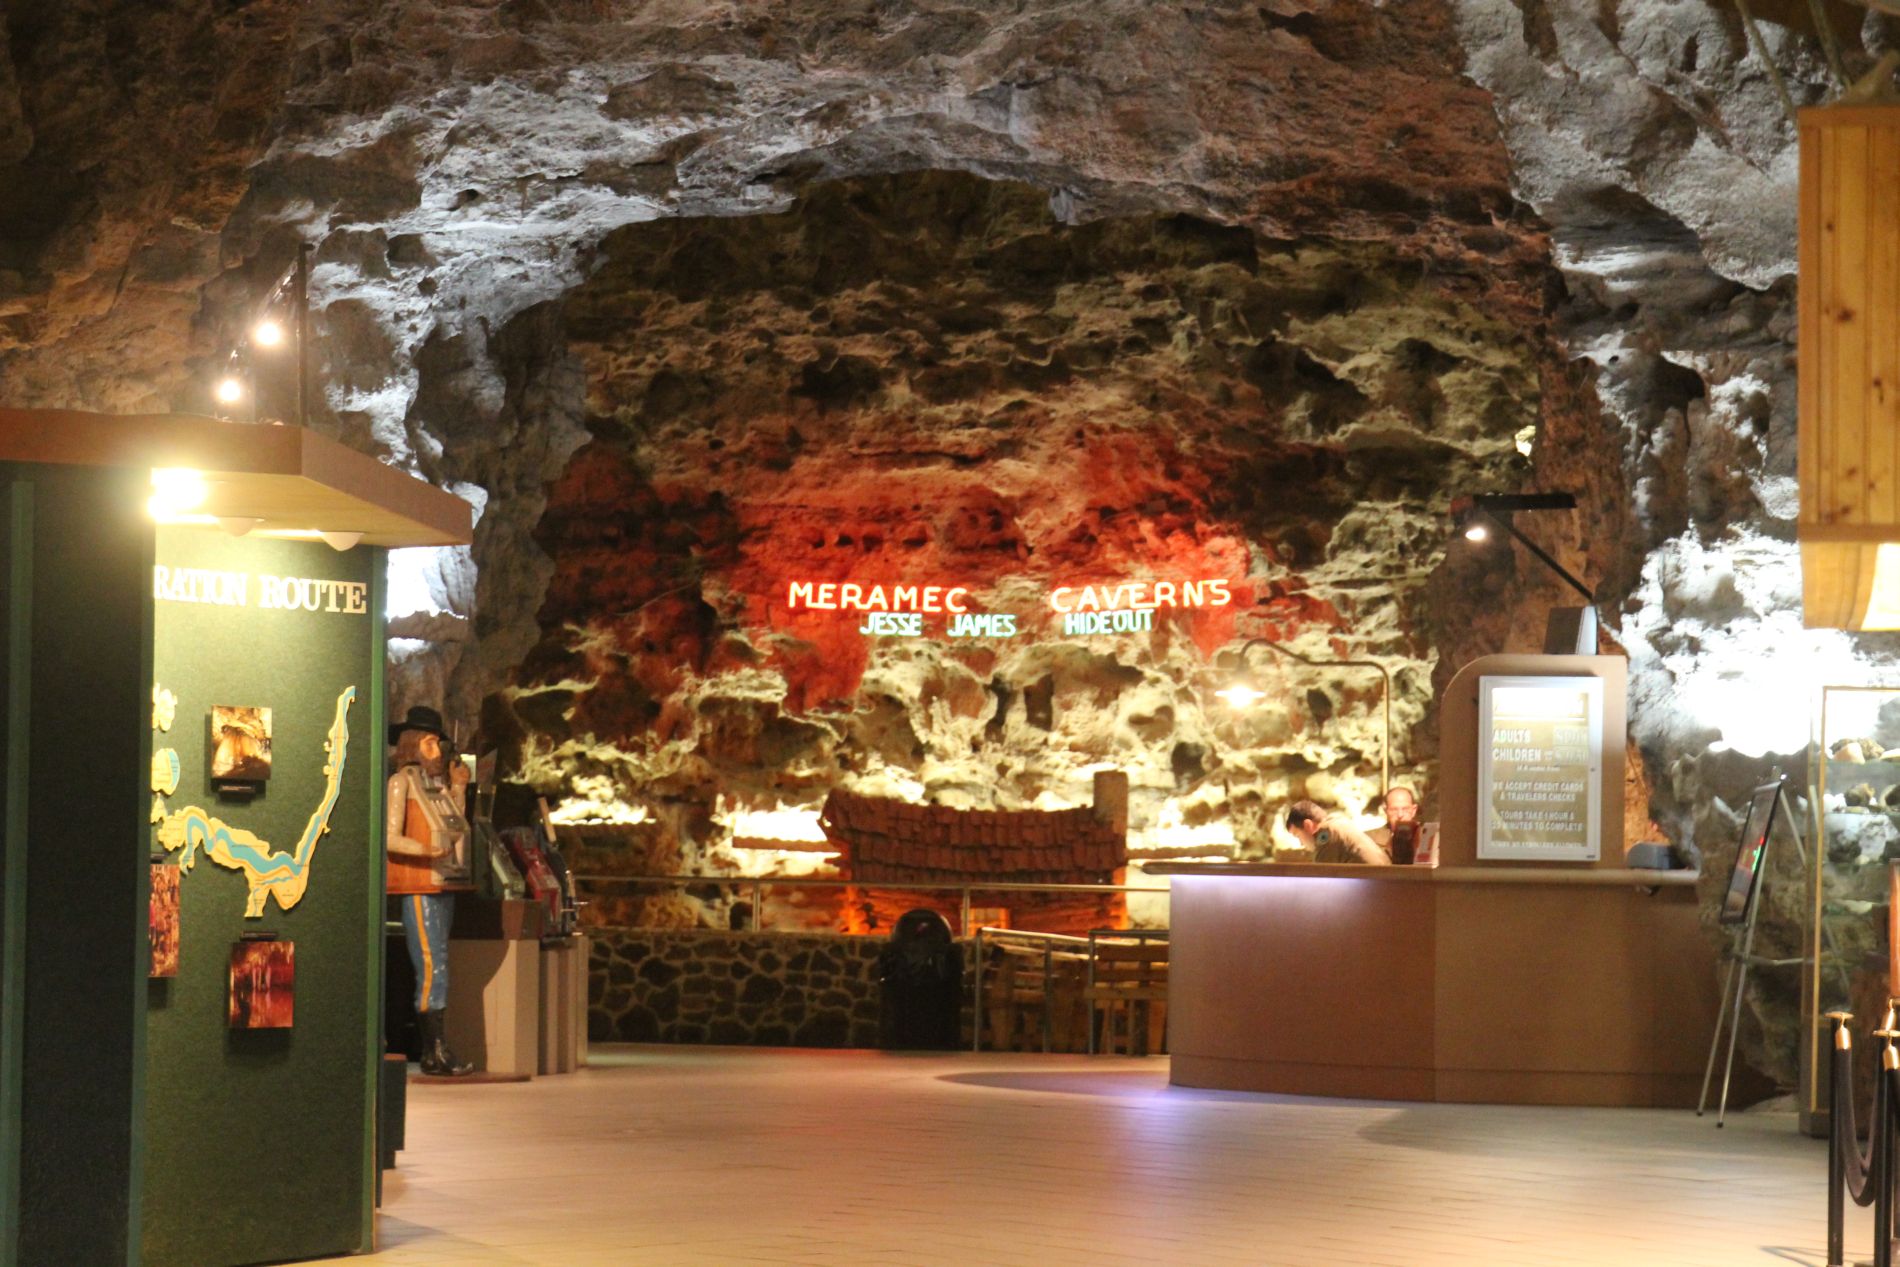 Meramec Caverns Jesse James Hideout in Stanton, Missouri